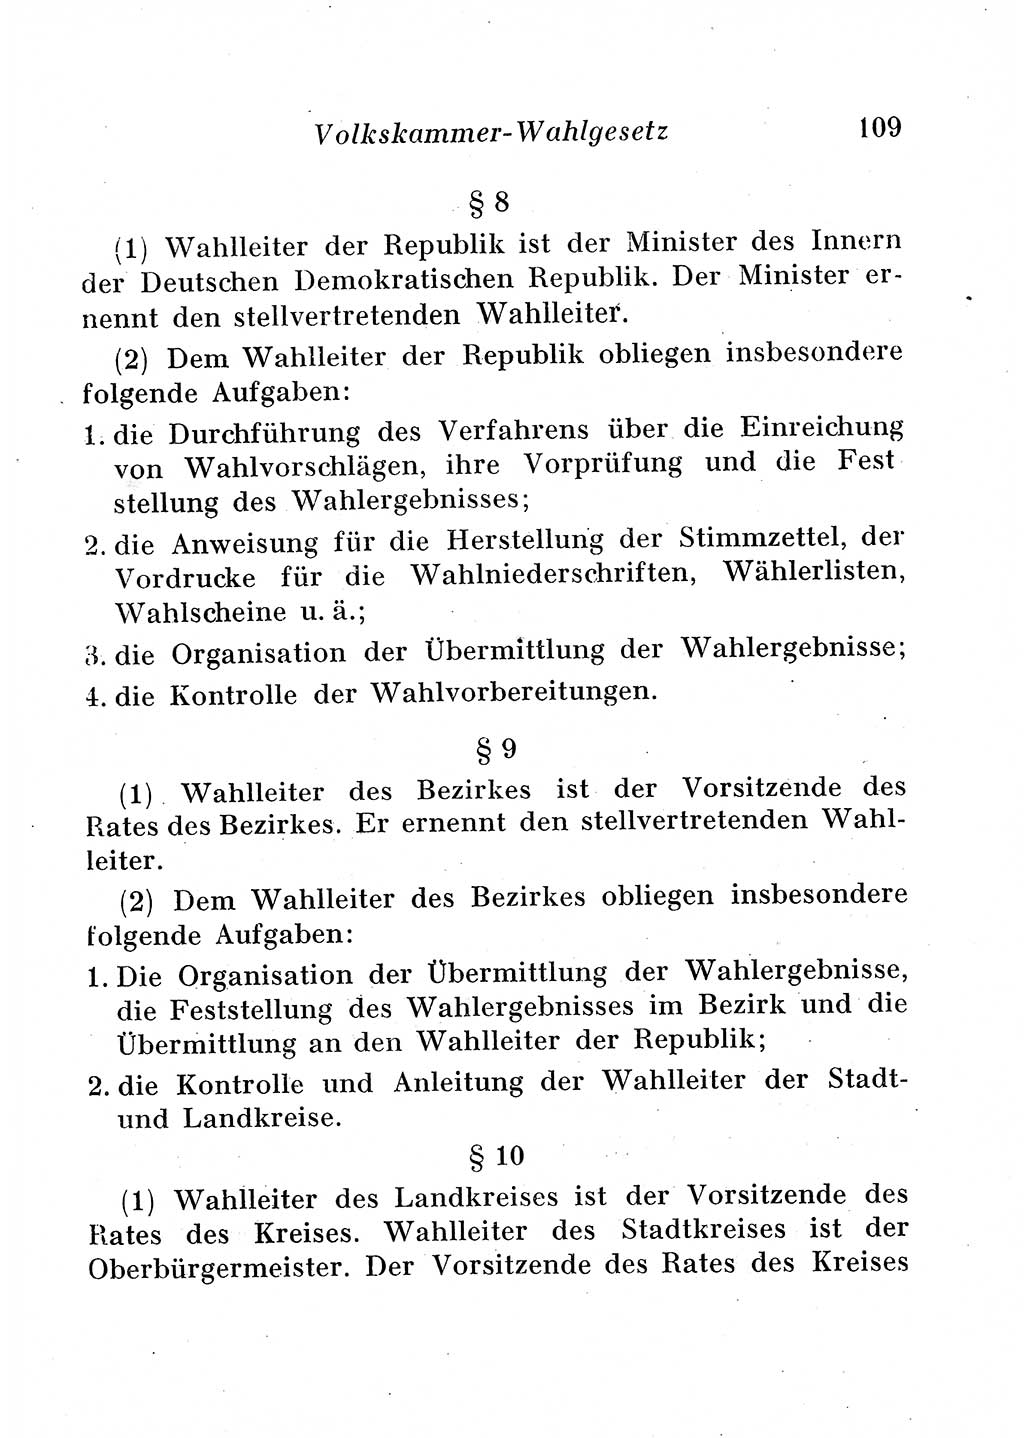 Staats- und verwaltungsrechtliche Gesetze der Deutschen Demokratischen Republik (DDR) 1958, Seite 109 (StVerwR Ges. DDR 1958, S. 109)